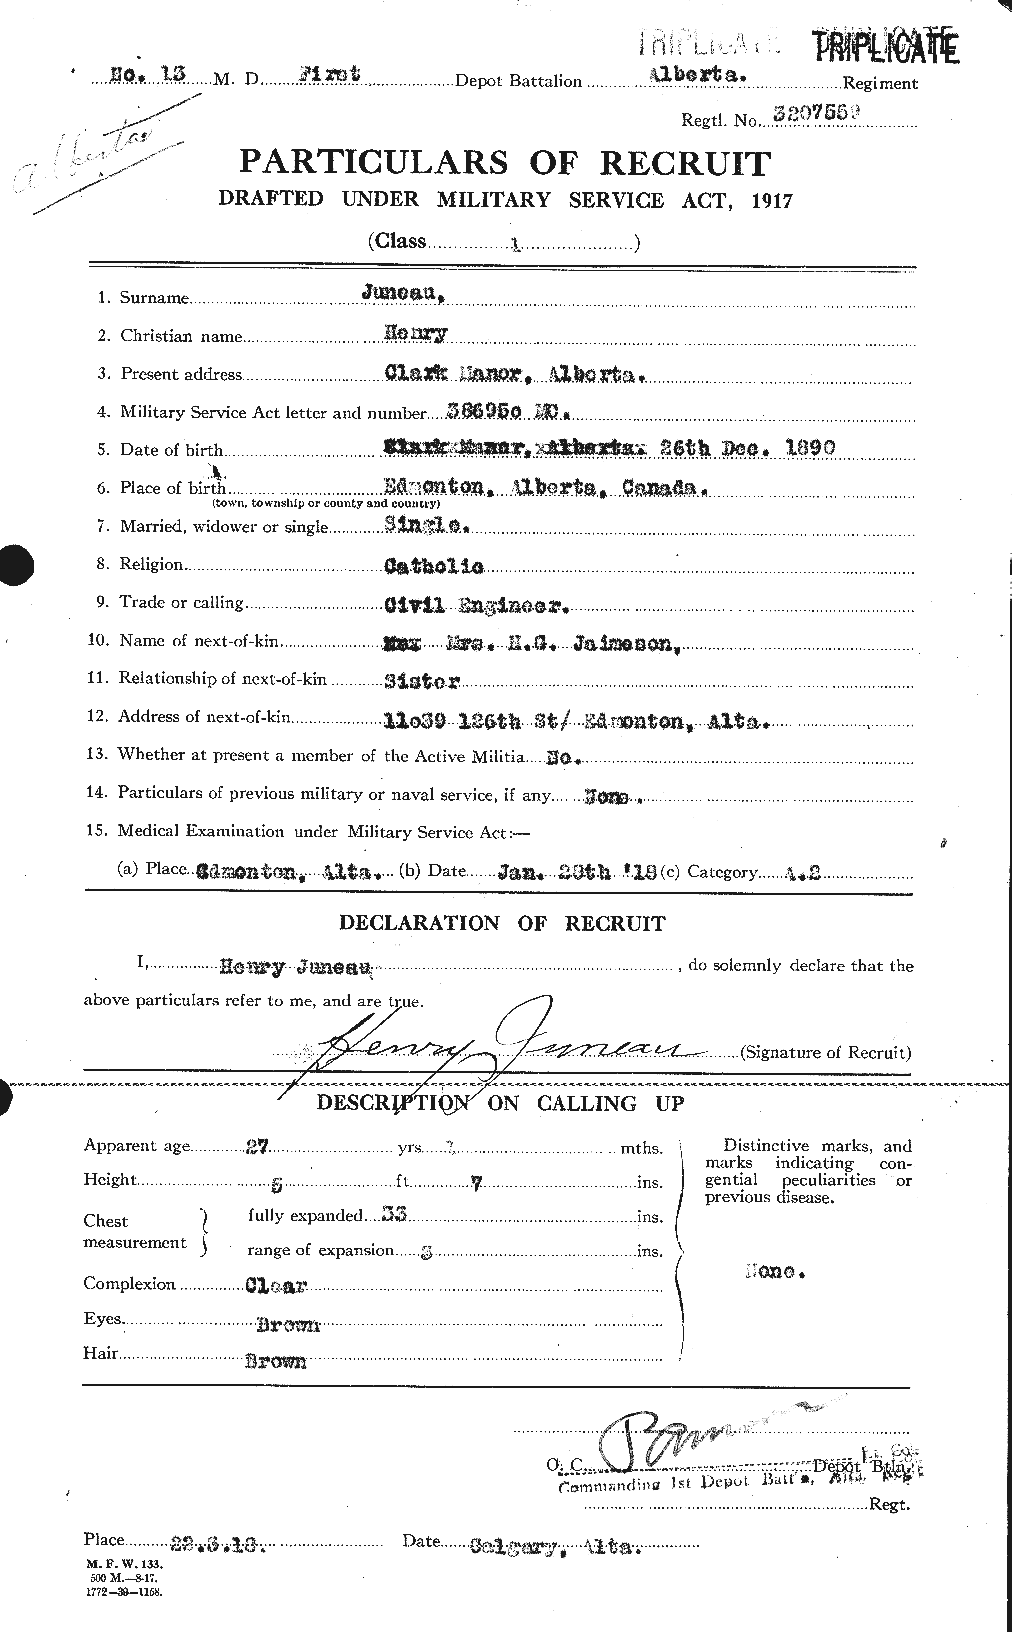 Dossiers du Personnel de la Première Guerre mondiale - CEC 426011a